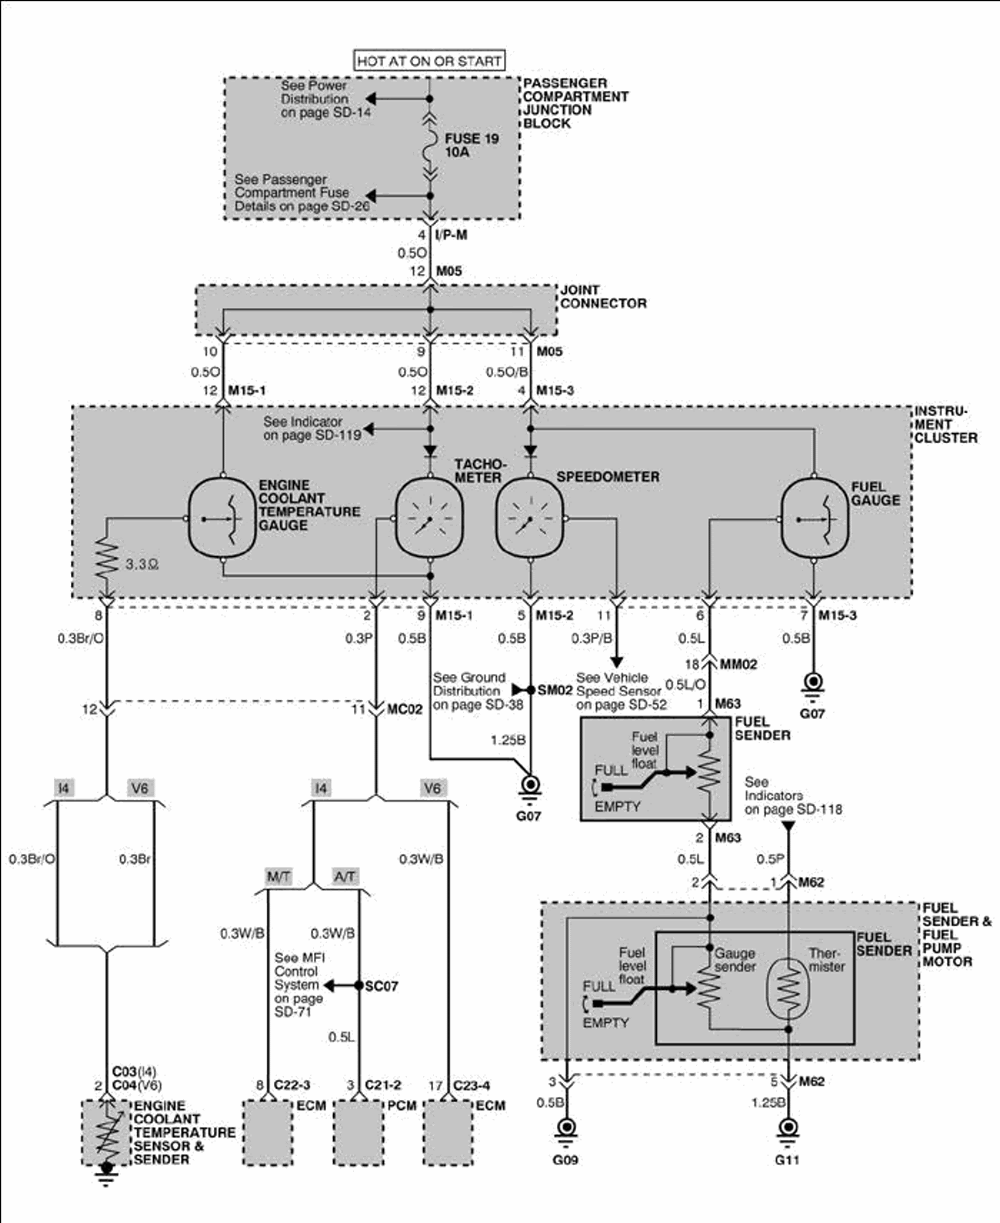 Wiring Manual PDF: 2004 Hyundai Santa Fe Brake Light Wiring Diagrams